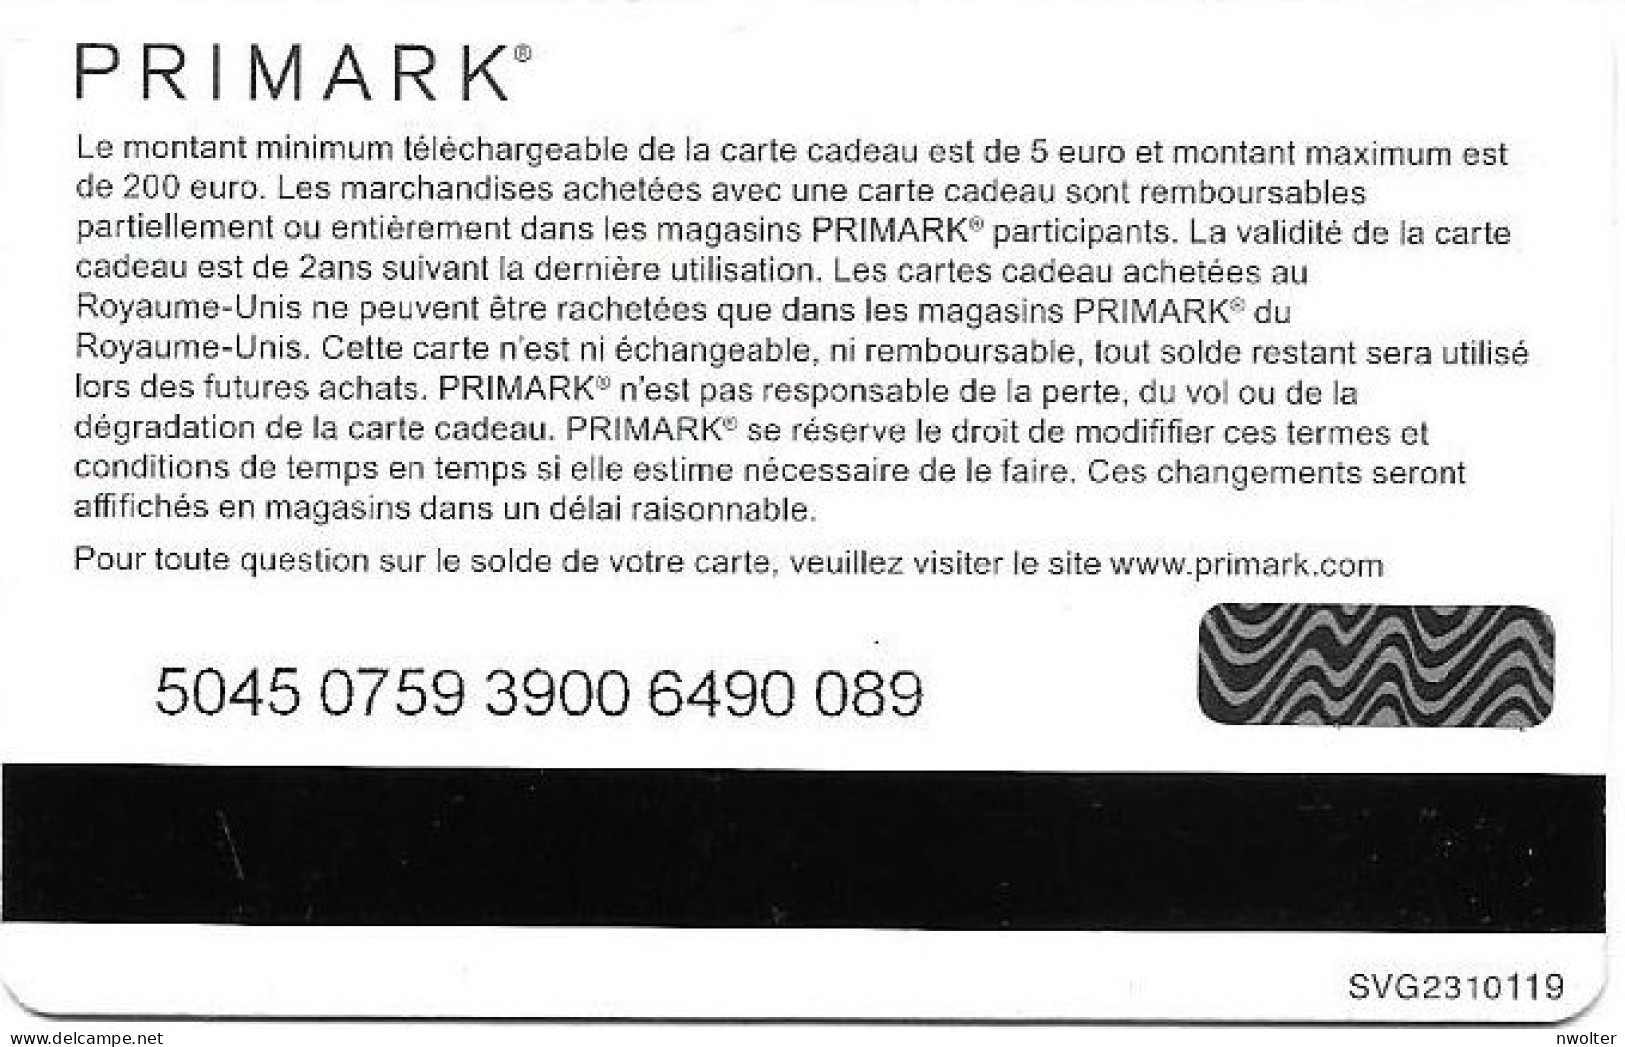 @+ Carte Cadeau - Gift Card : Primark Bleue (France) - SVG2310119 - Cartes Cadeaux